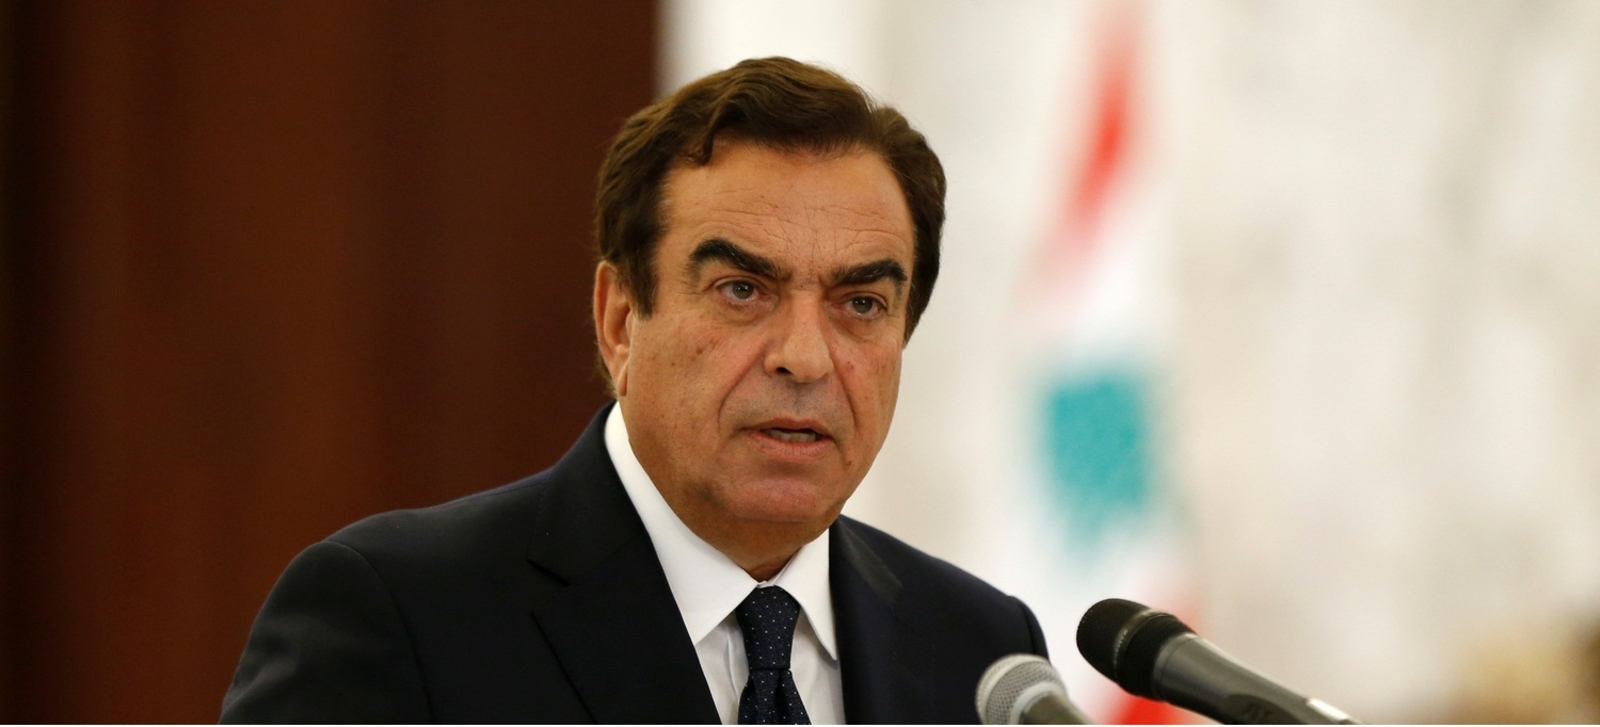 الحكومة اللبنانية توافق على استقالة جورج قرداحي وزير الإعلام السابق